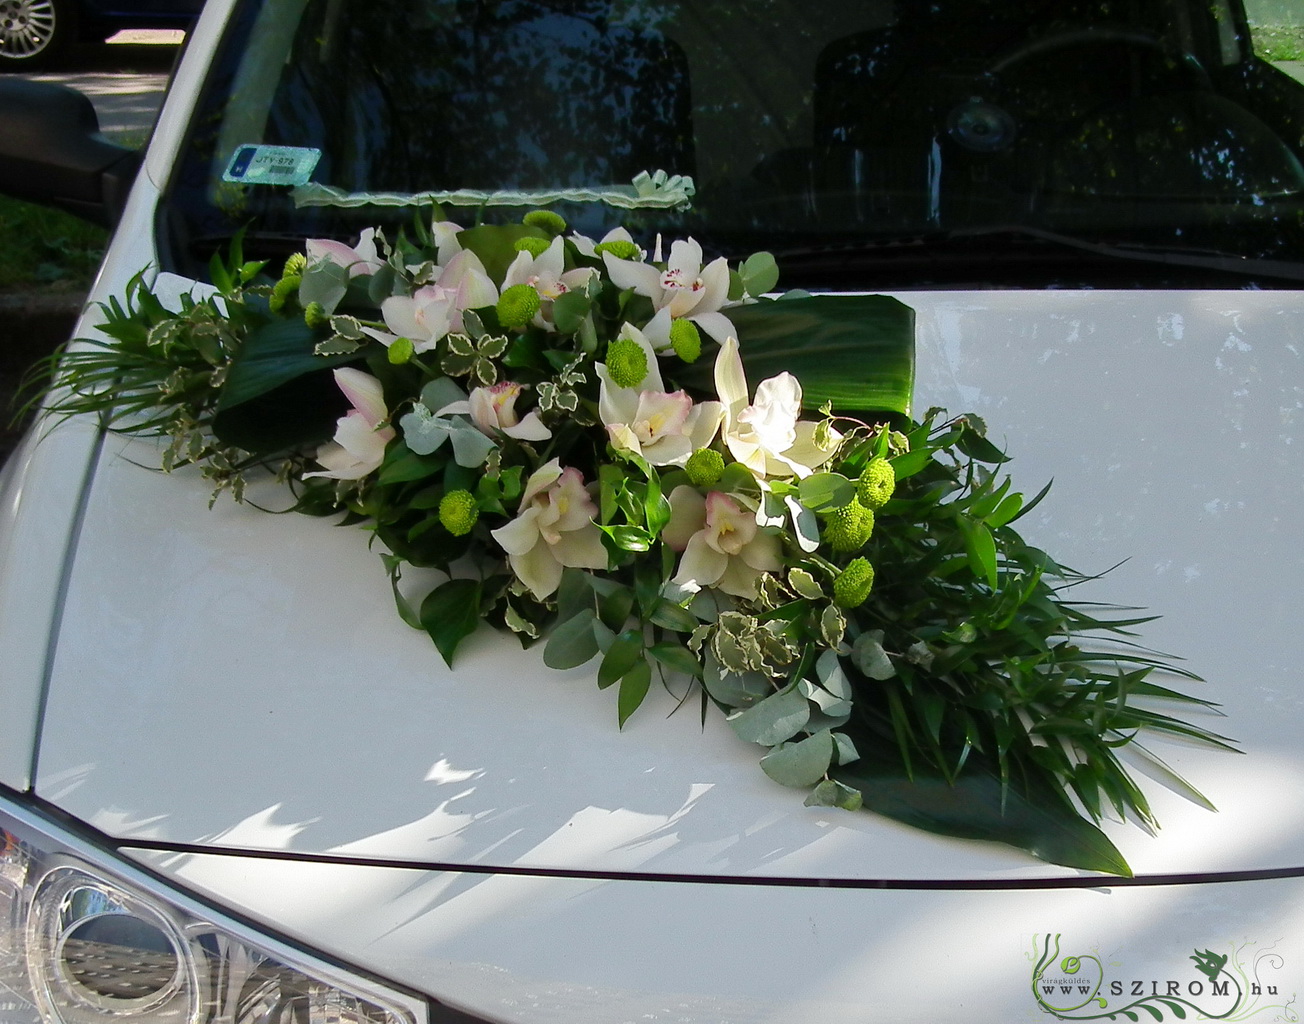 ovális autódísz orchideával (fehér, zöld, rózsaszín)